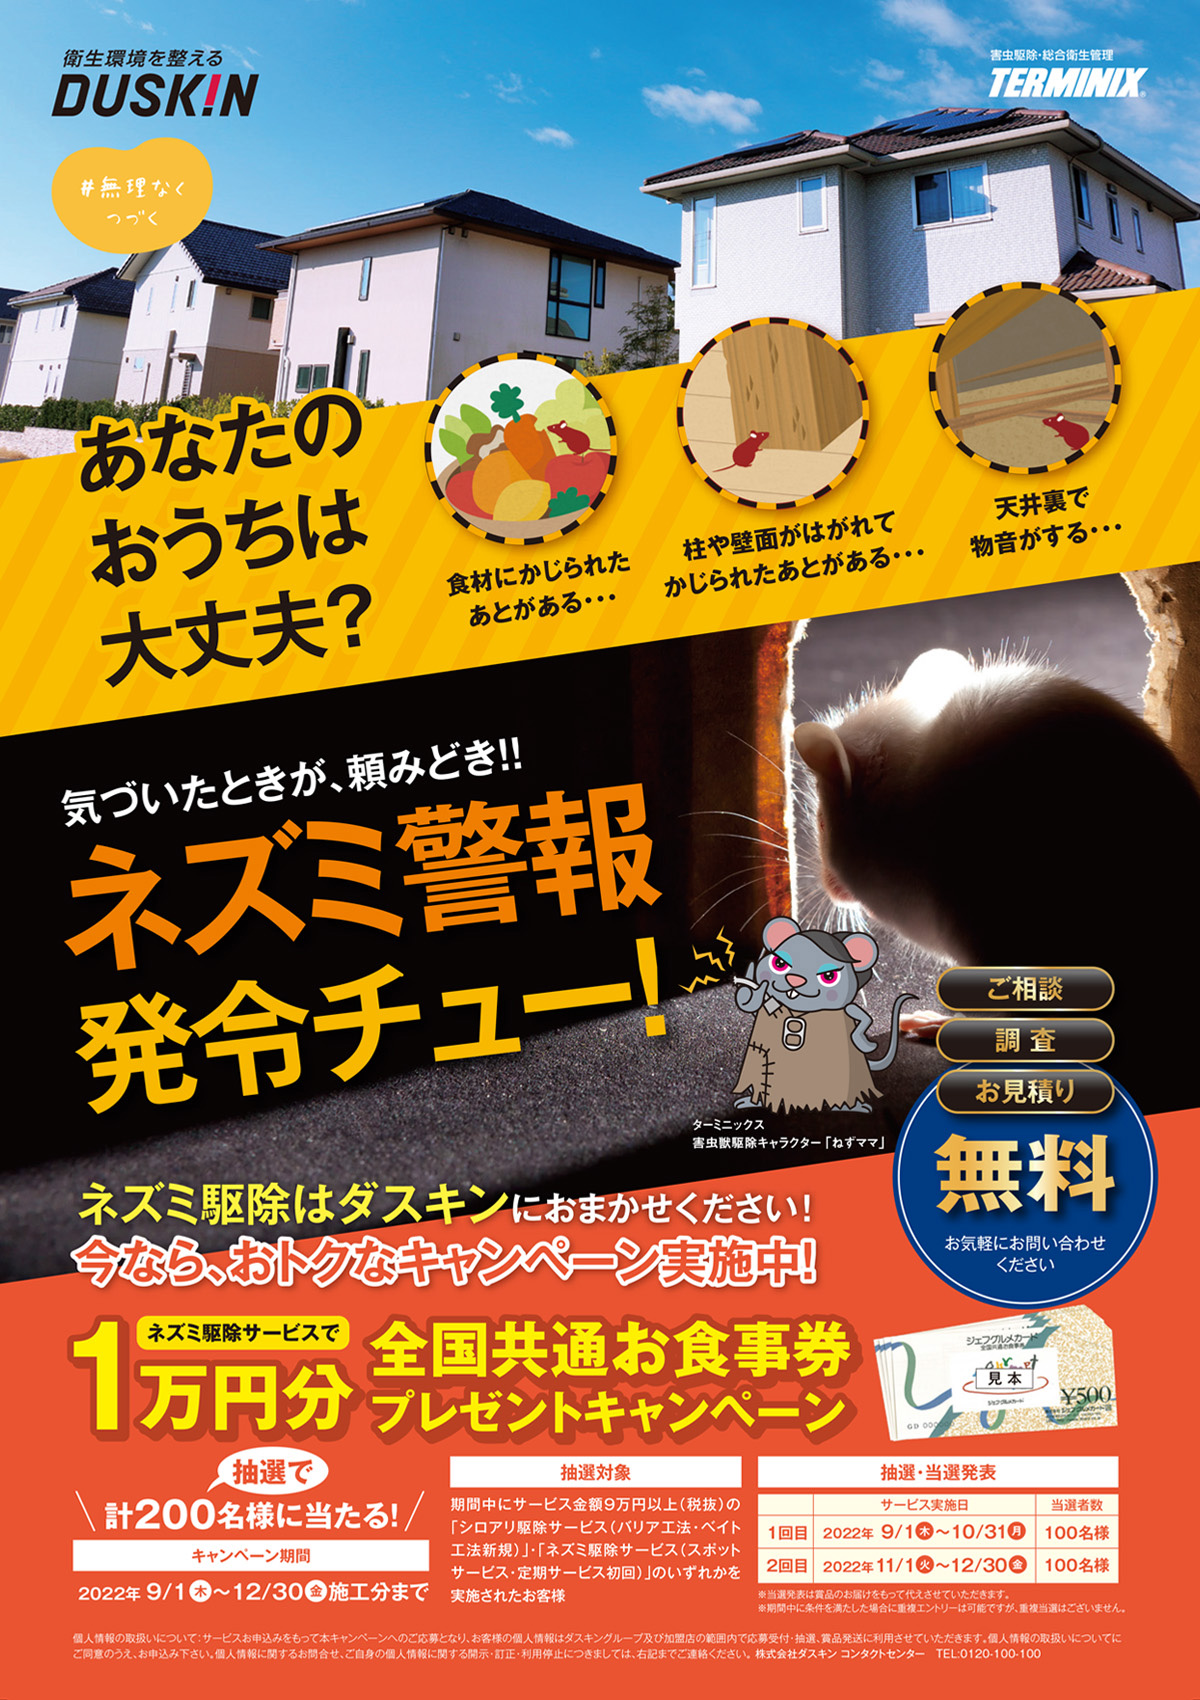 ネズミ駆除で1万円分のお食事券が当たるキャンペーン実施中